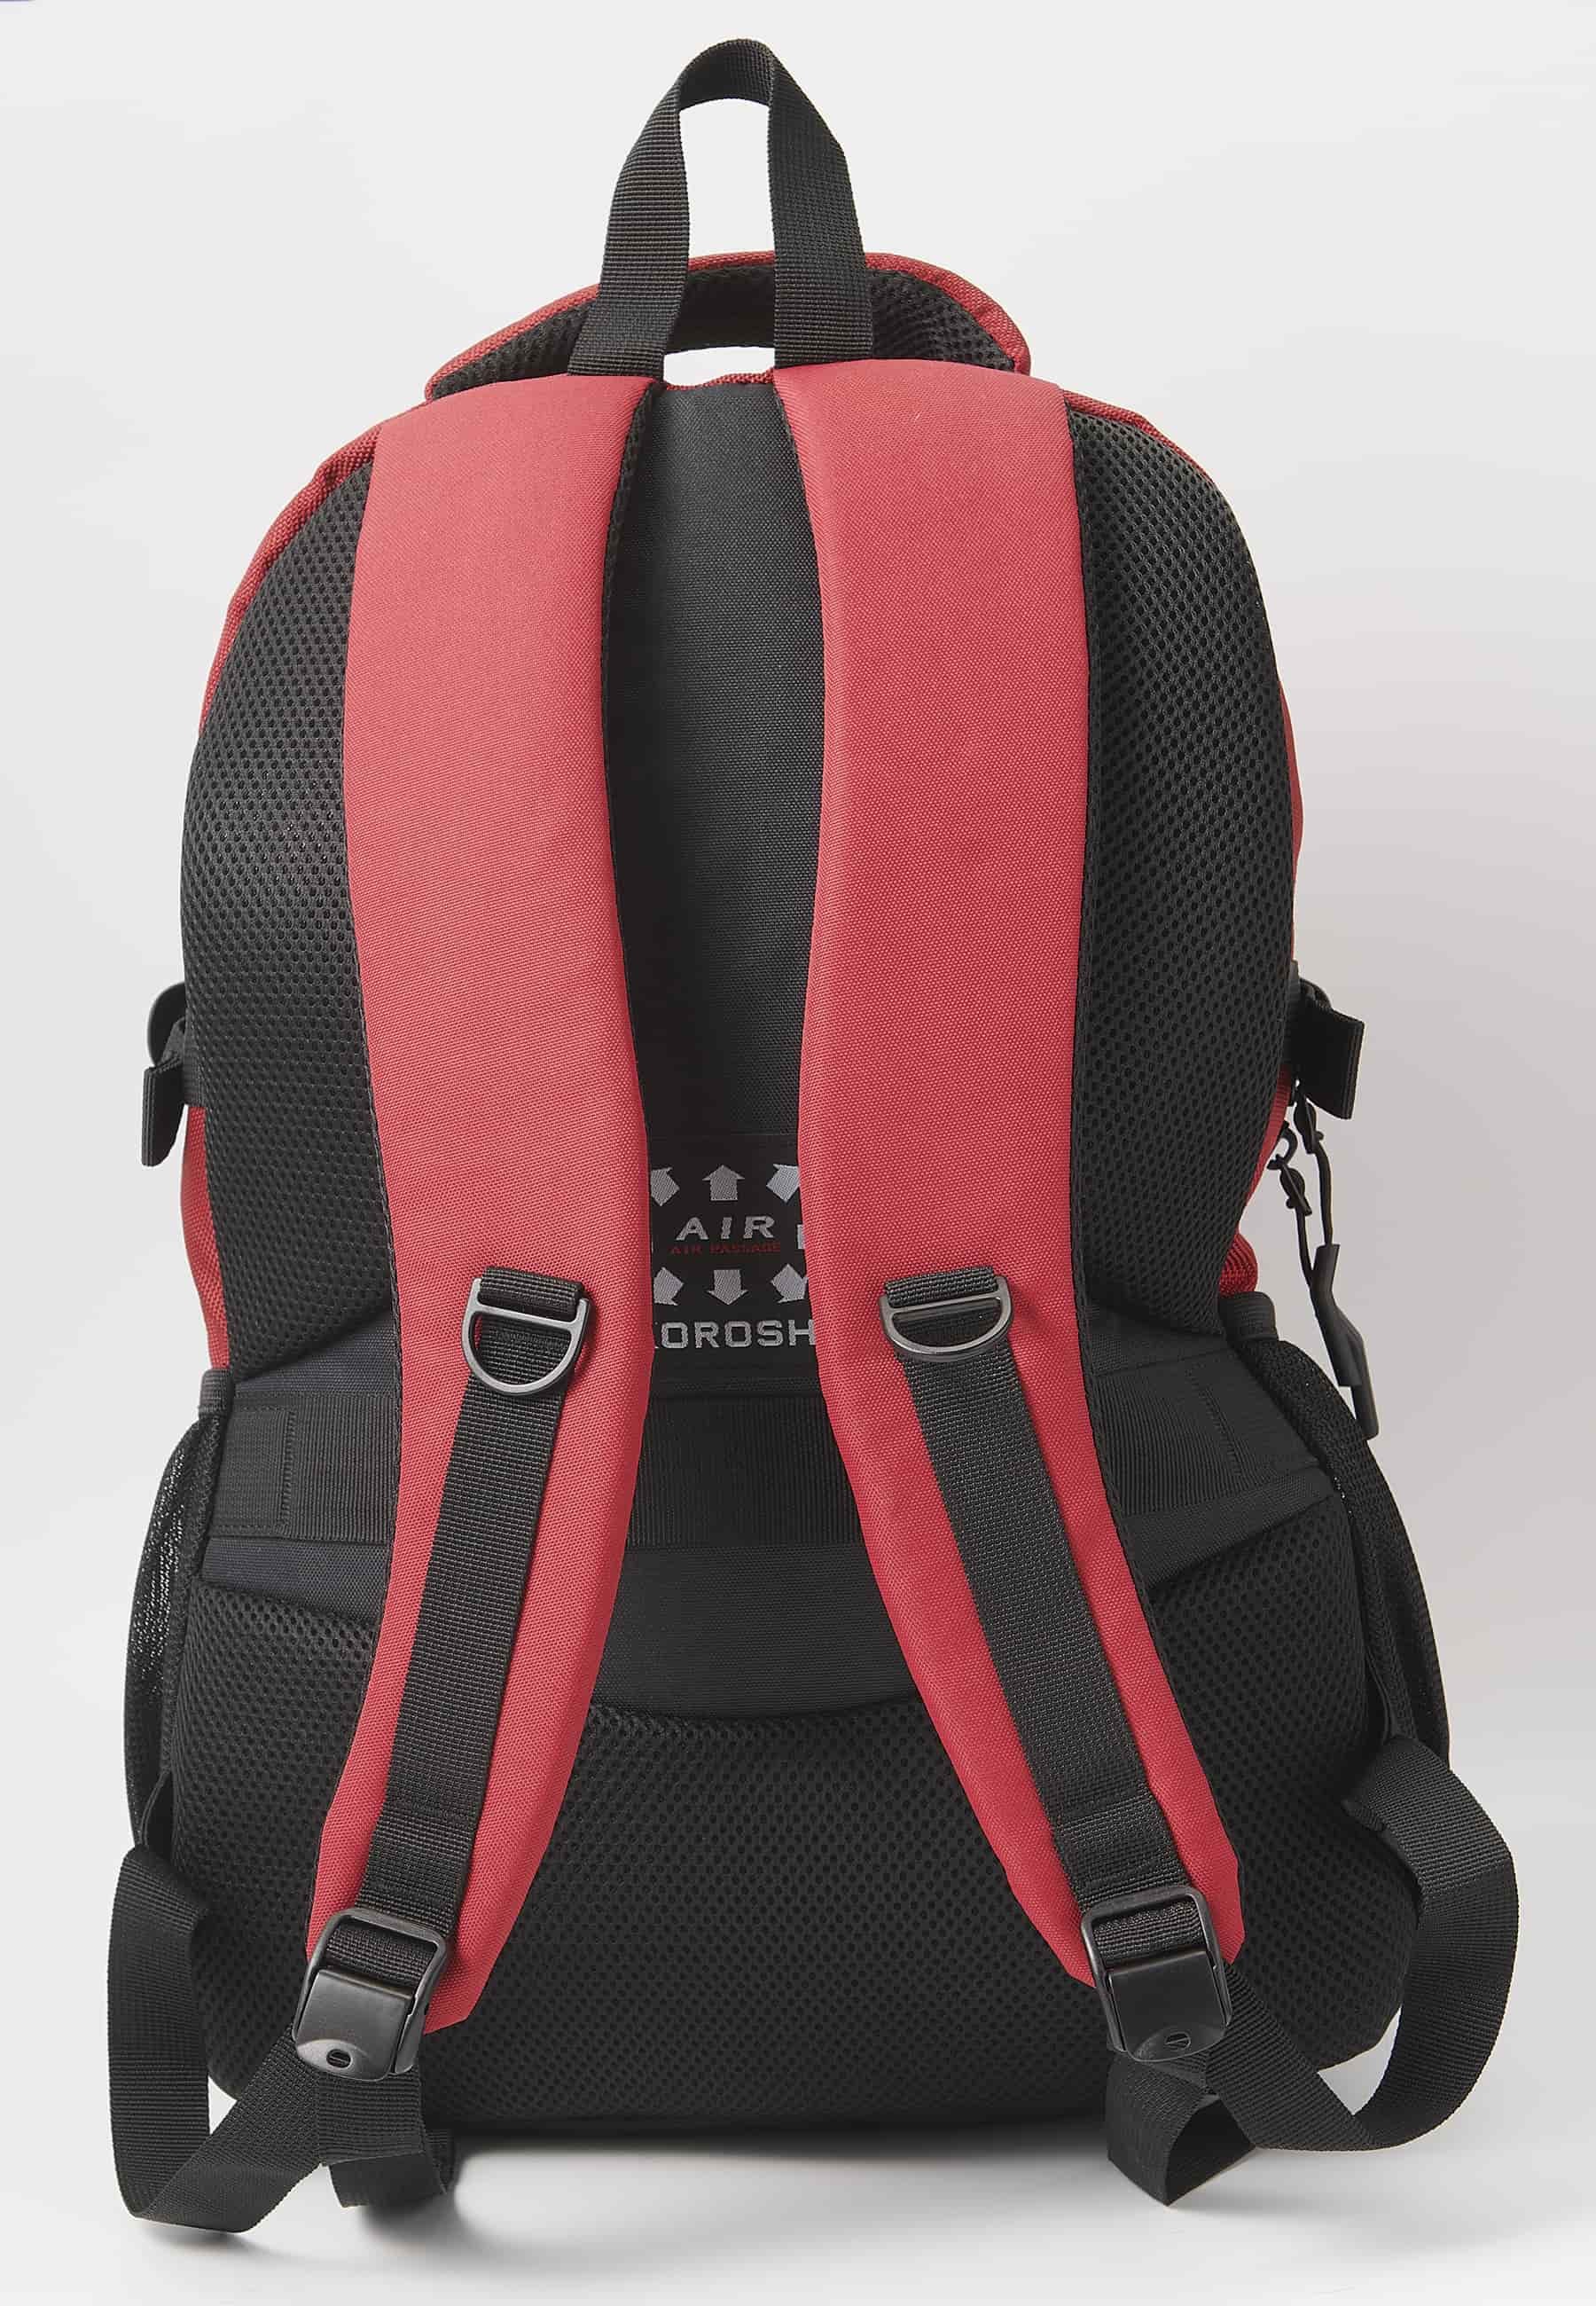 Sac à dos Koröshi avec trois compartiments zippés, un pour ordinateur portable, avec poches intérieures rouges